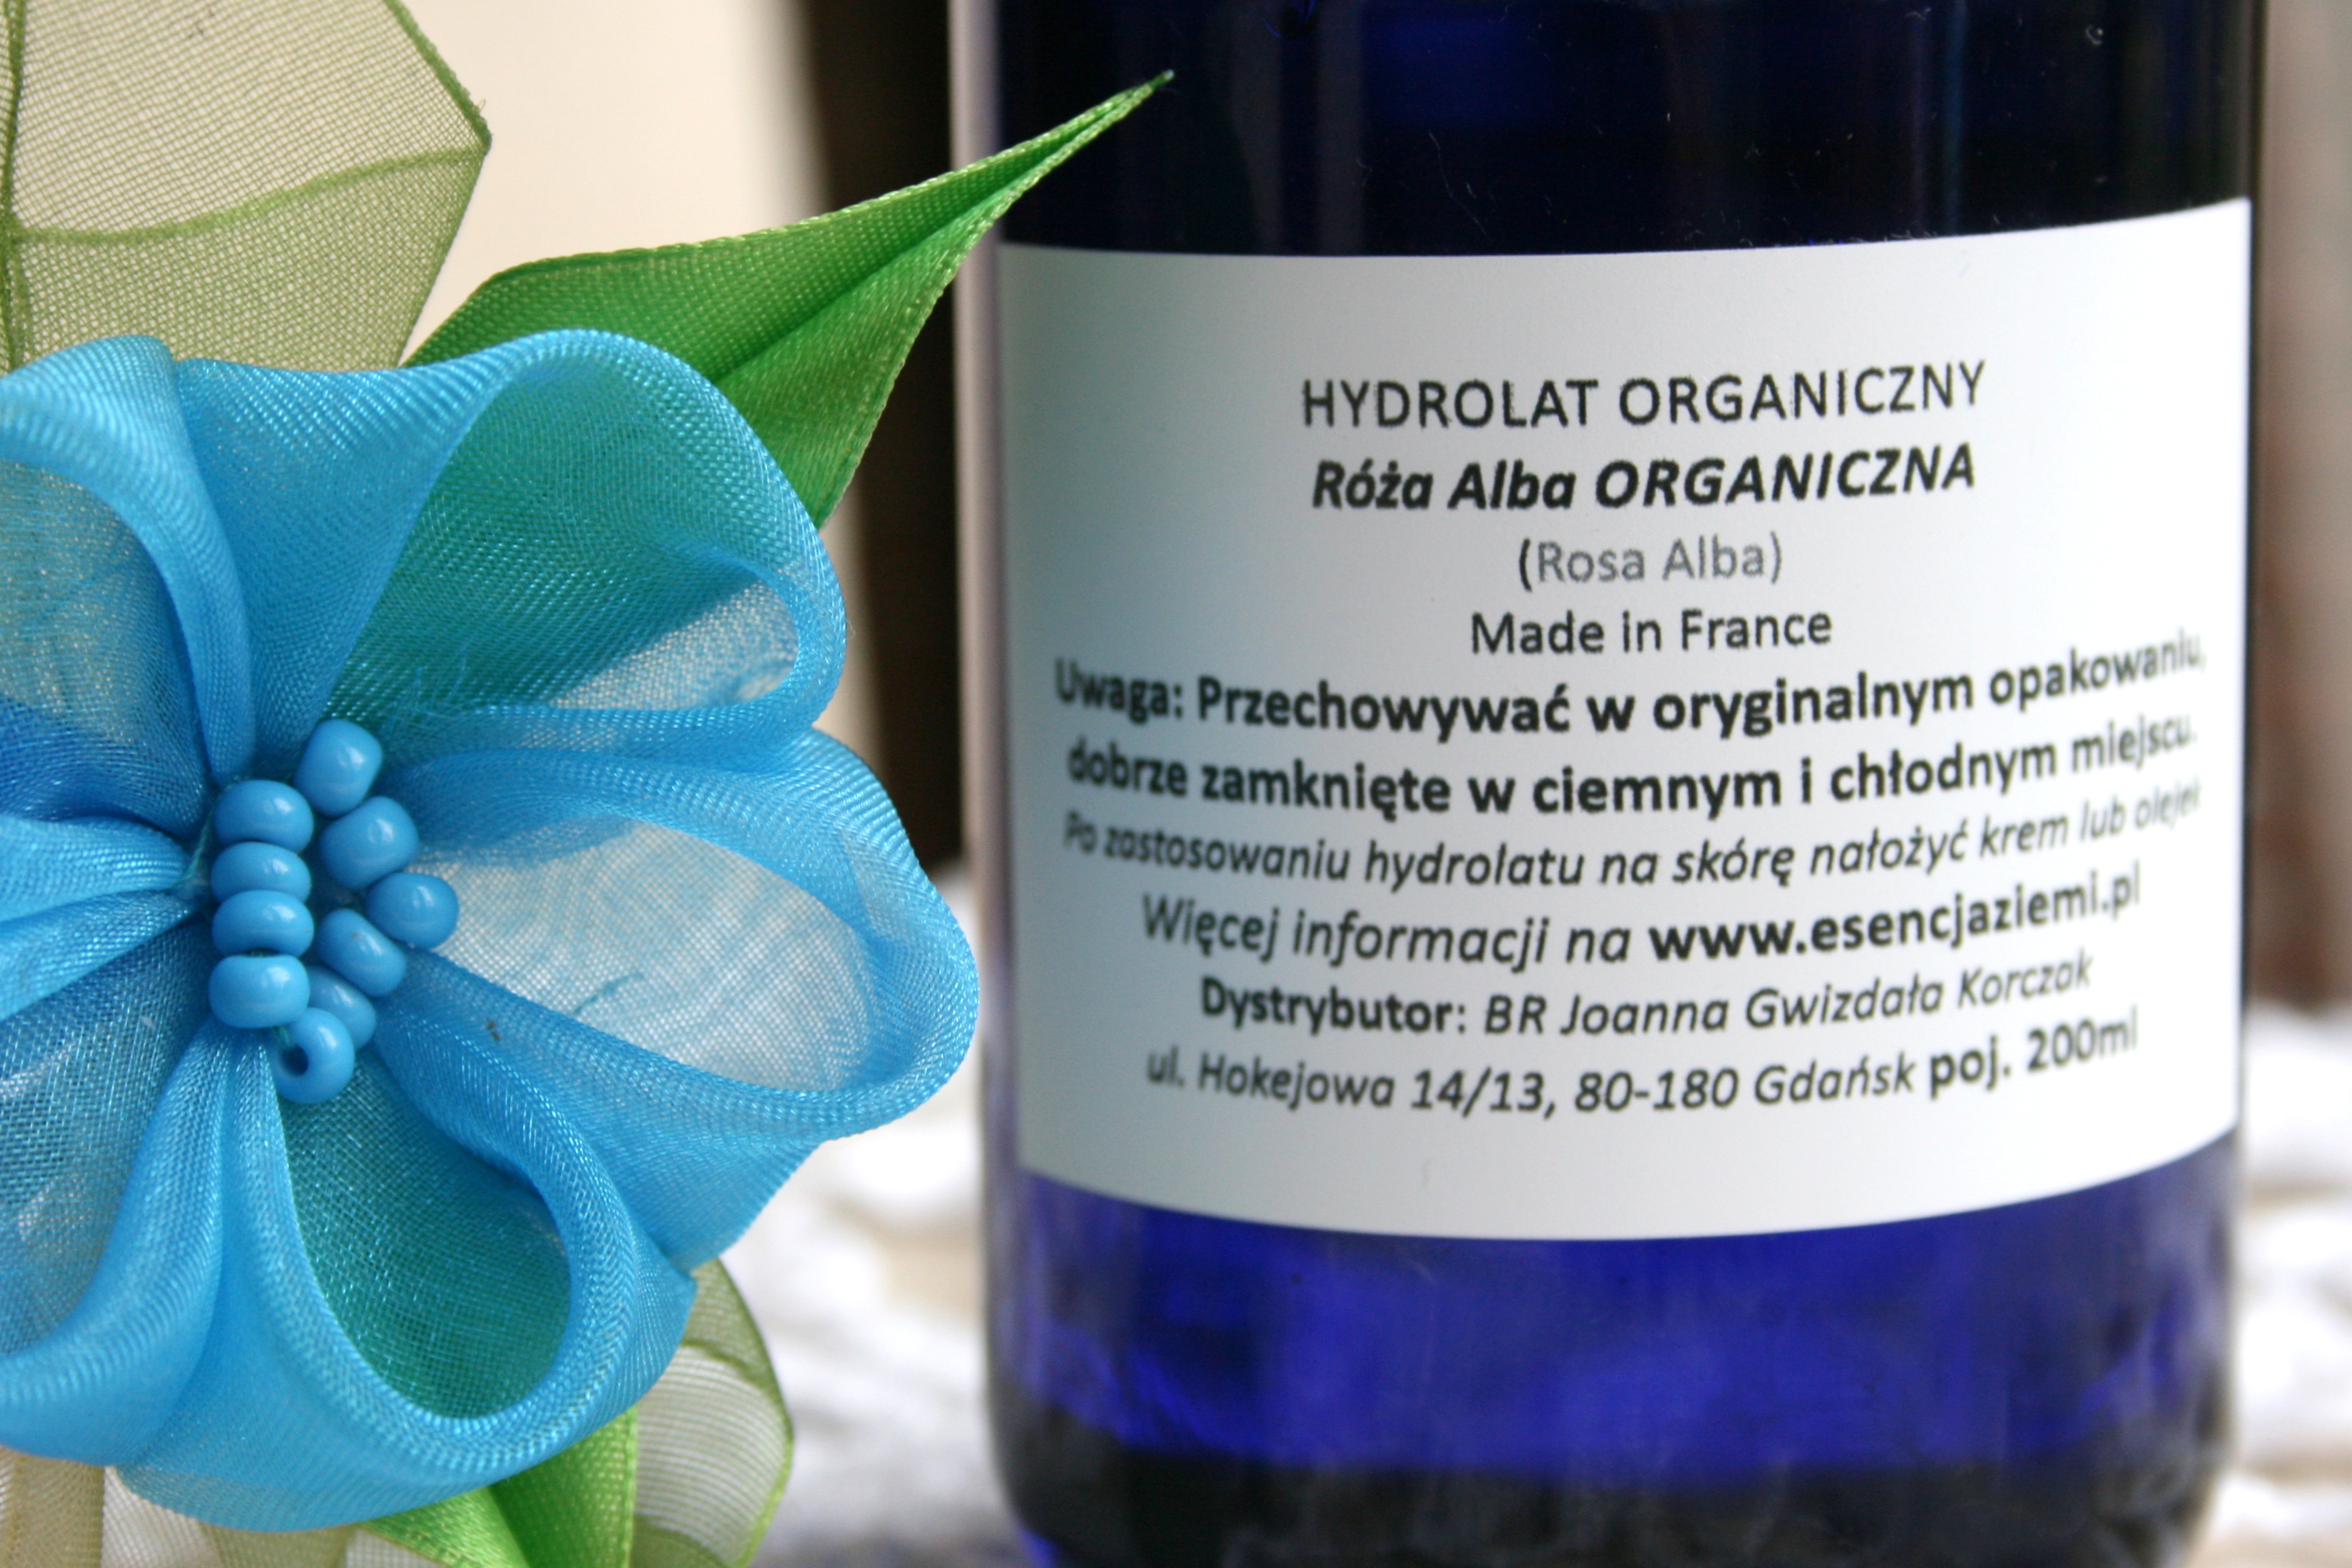 organiczny hydrolat różany